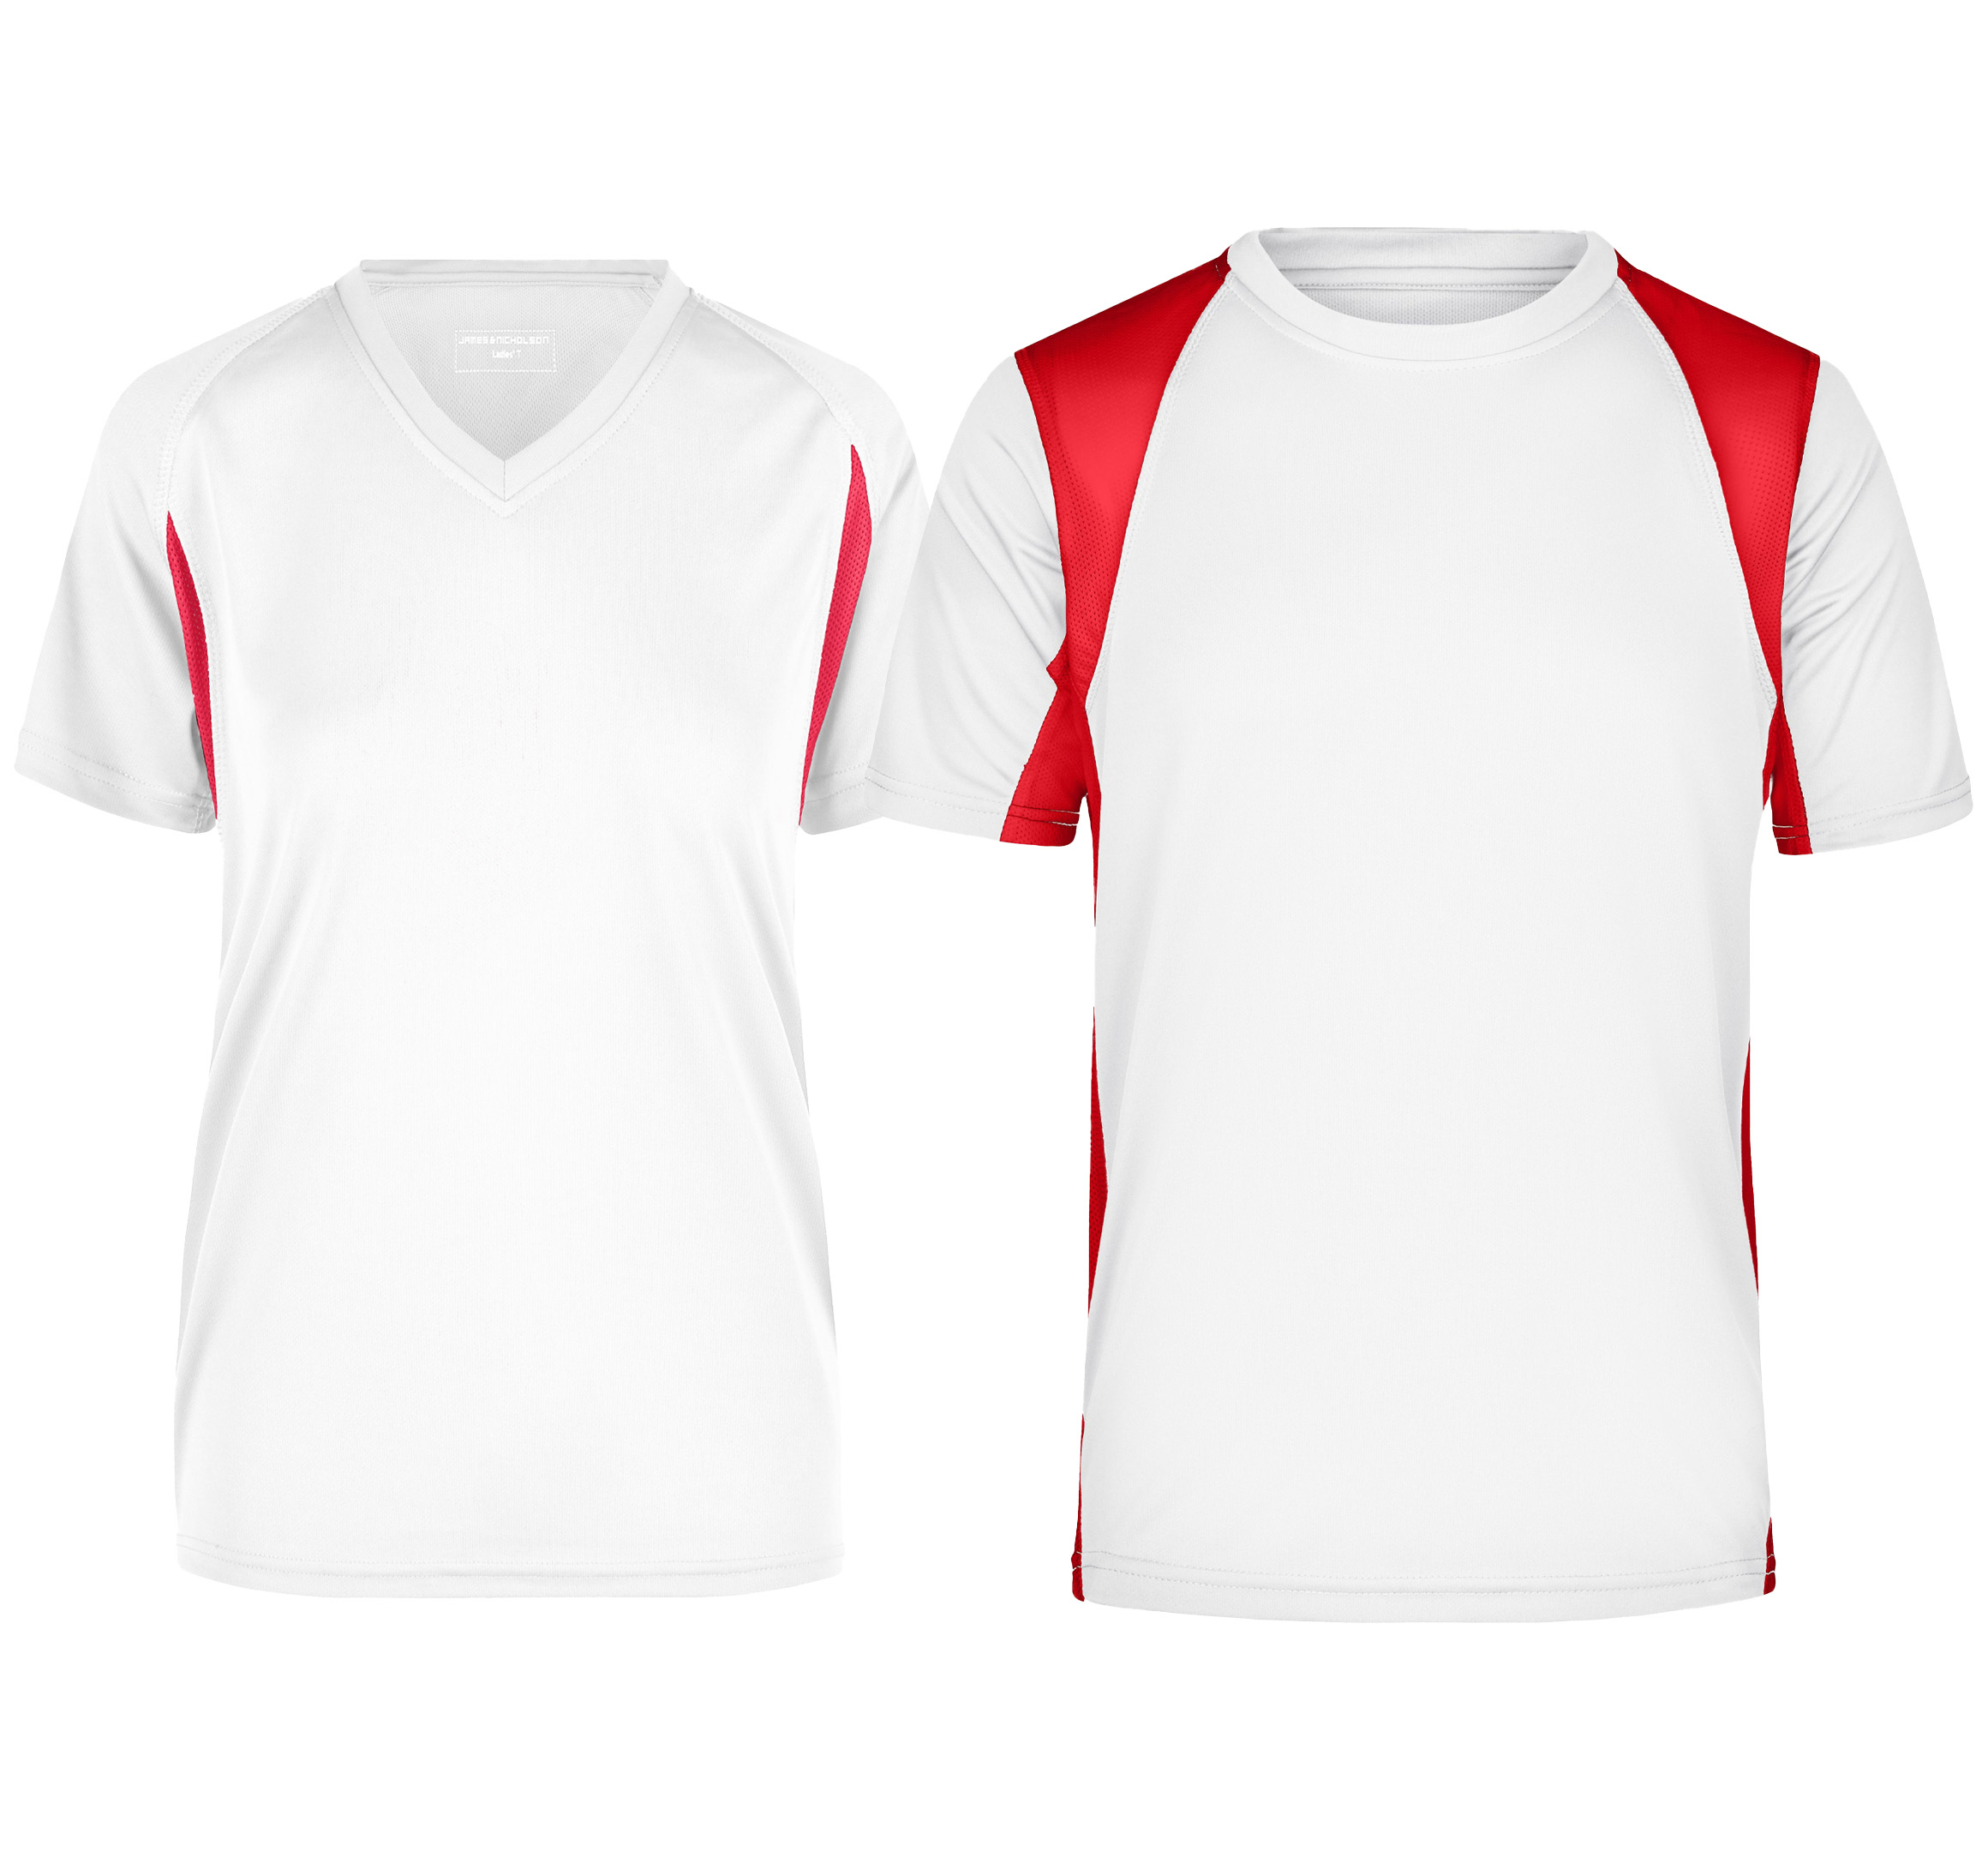 Hier sehen Sie BASIC Laufshirts als Damen und Herren Modell in der Farbe Weiß mit roten Farbakzenten